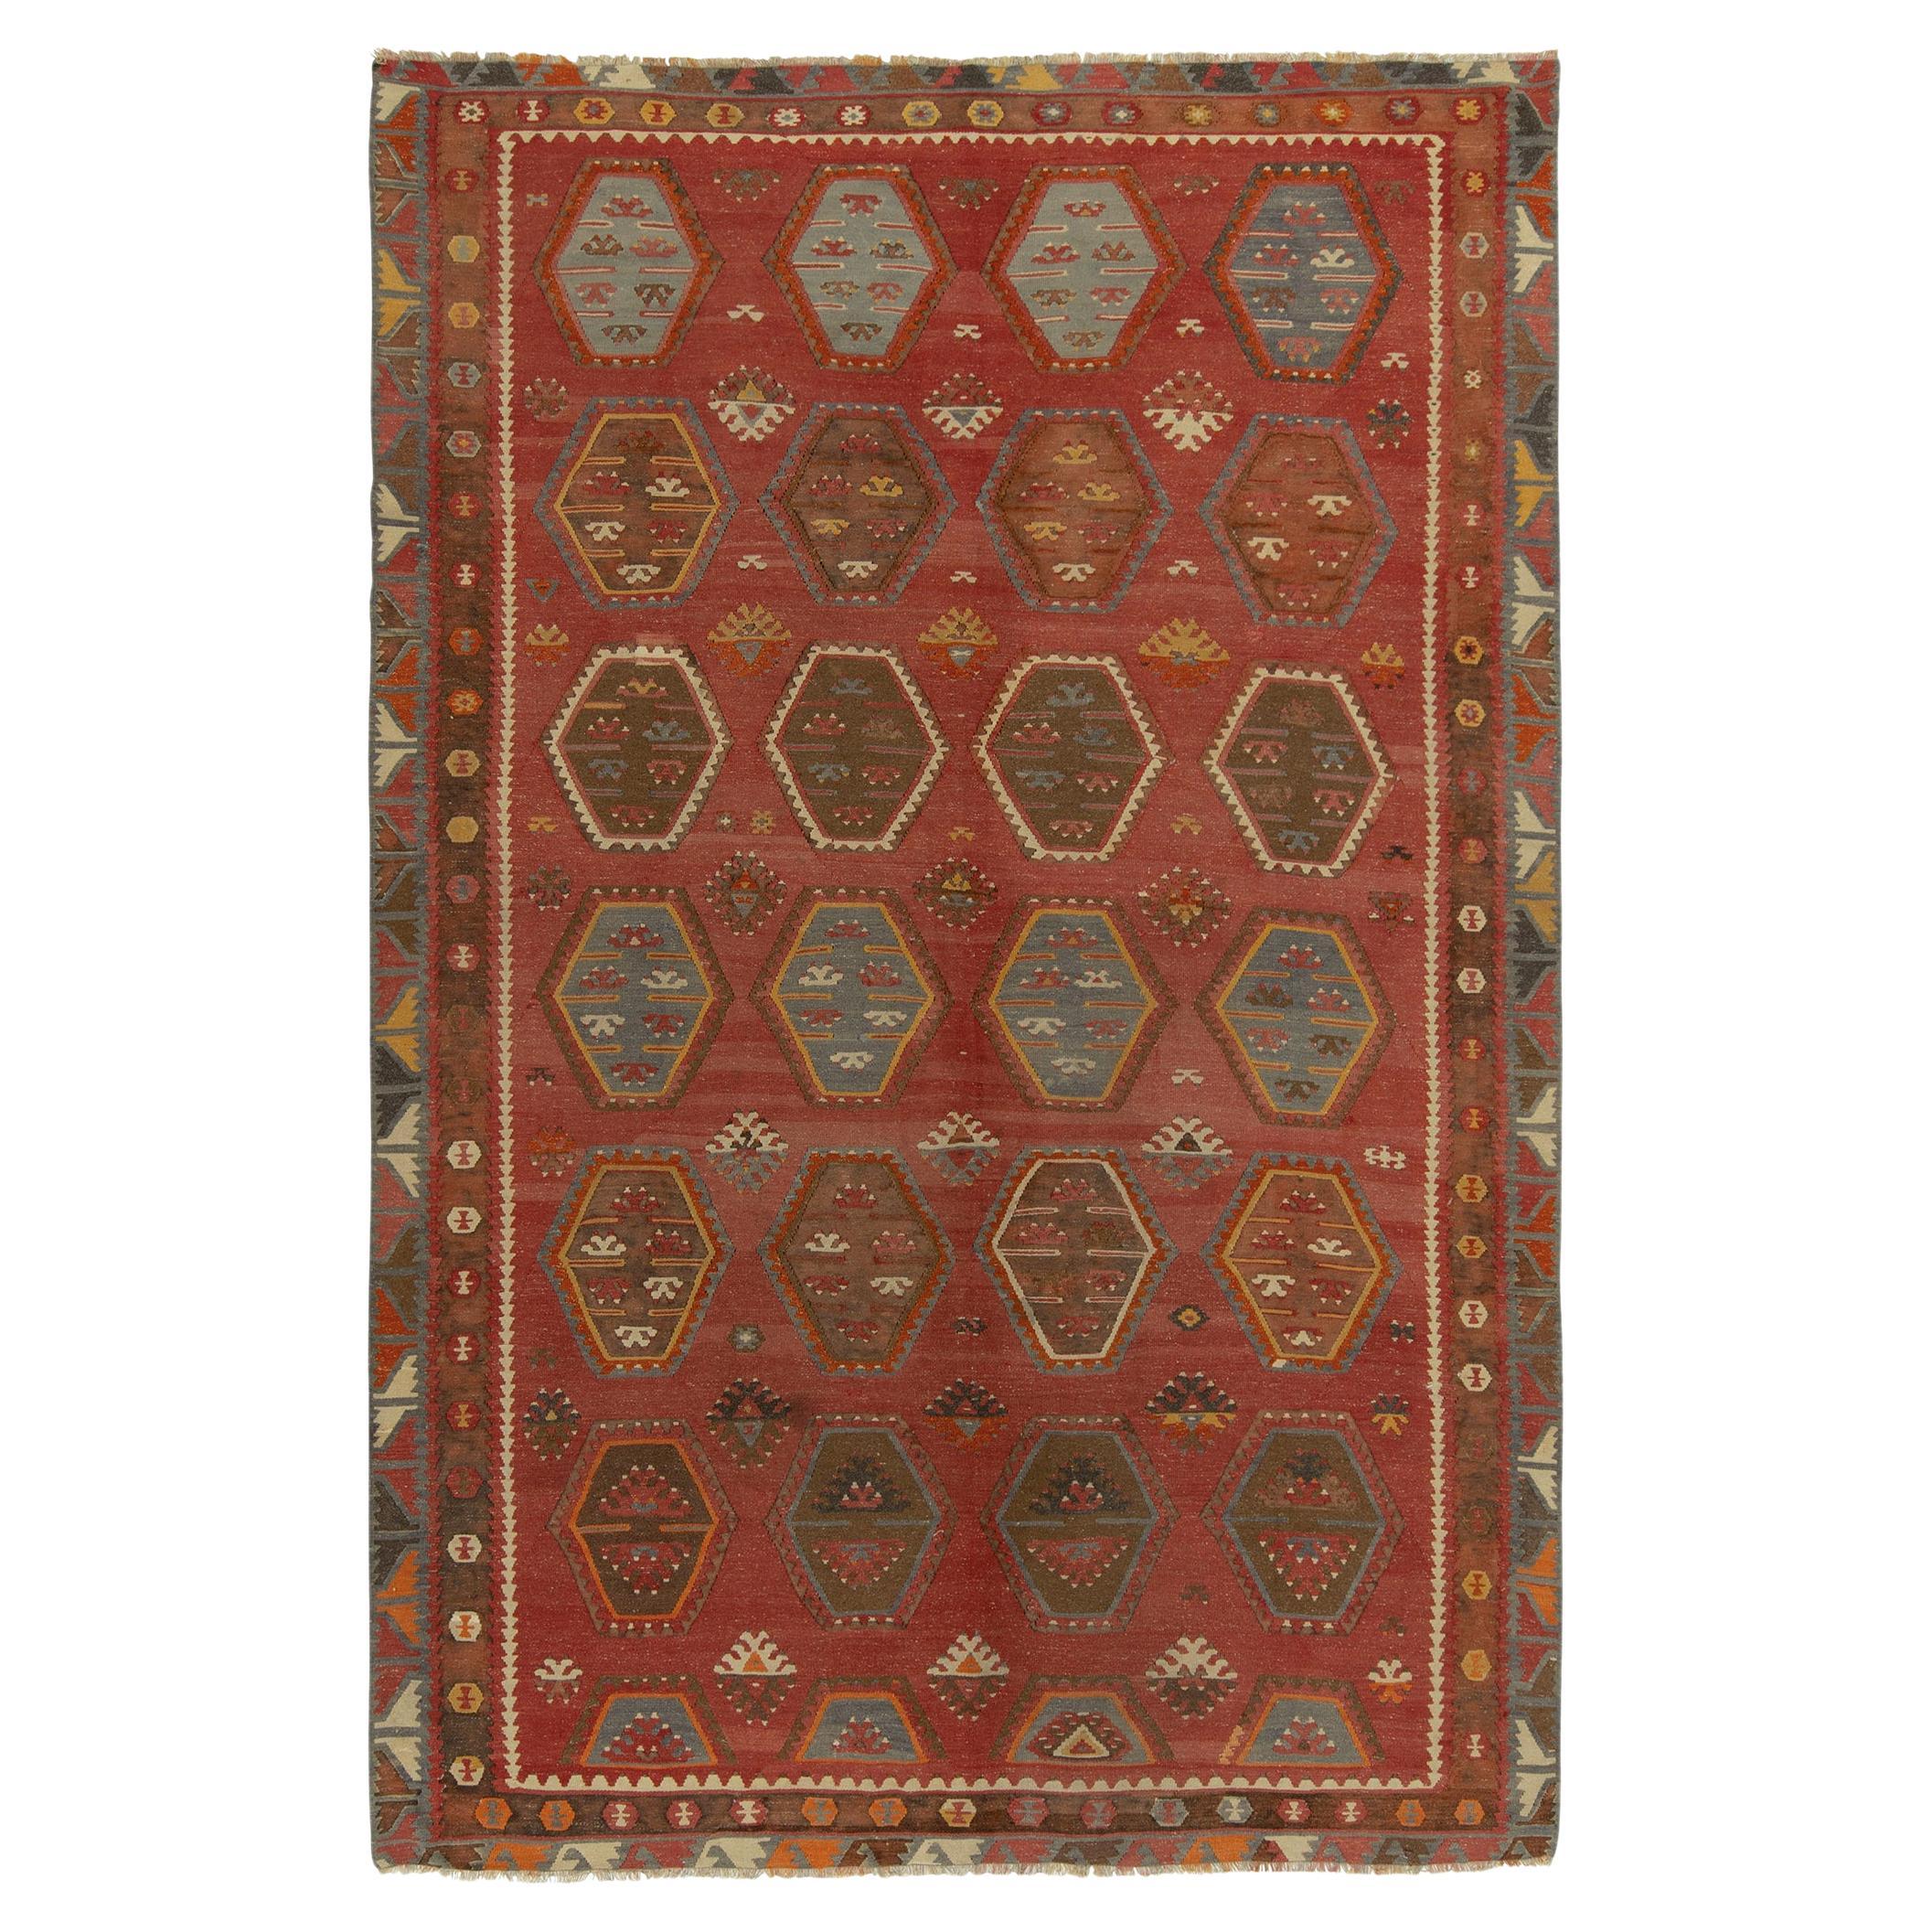 Tapis Kilim turc vintage à motifs géométriques tribaux rouges et bruns par Rug & Kilim